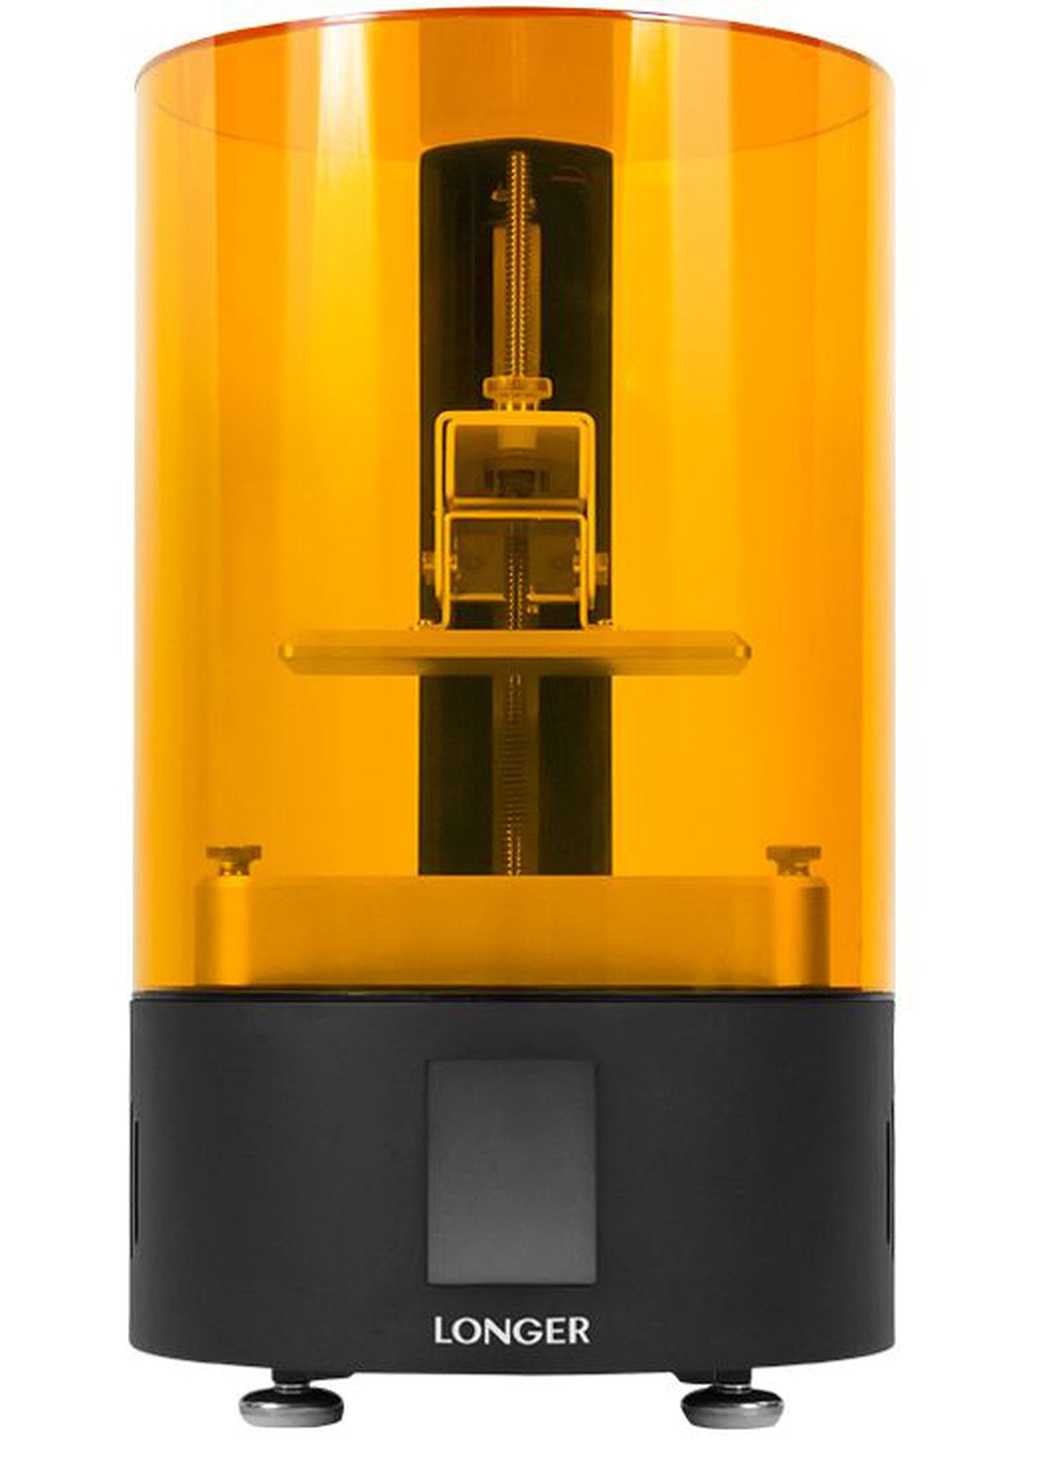 3D принтер Longer Orange 120 c поддержкой автономной печати фото